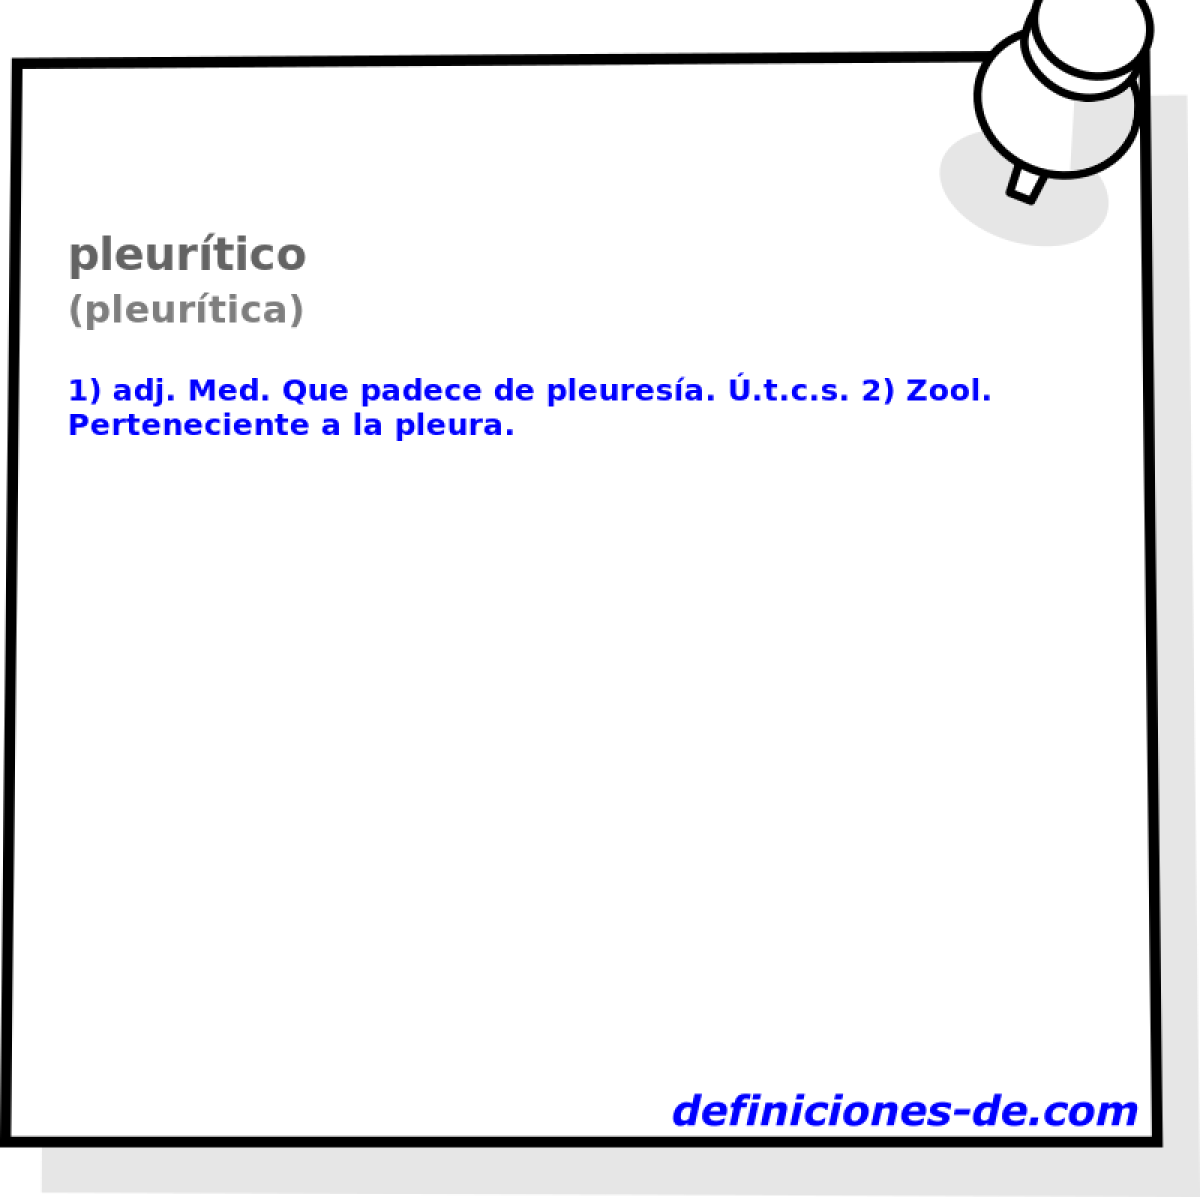 pleurtico (pleurtica)